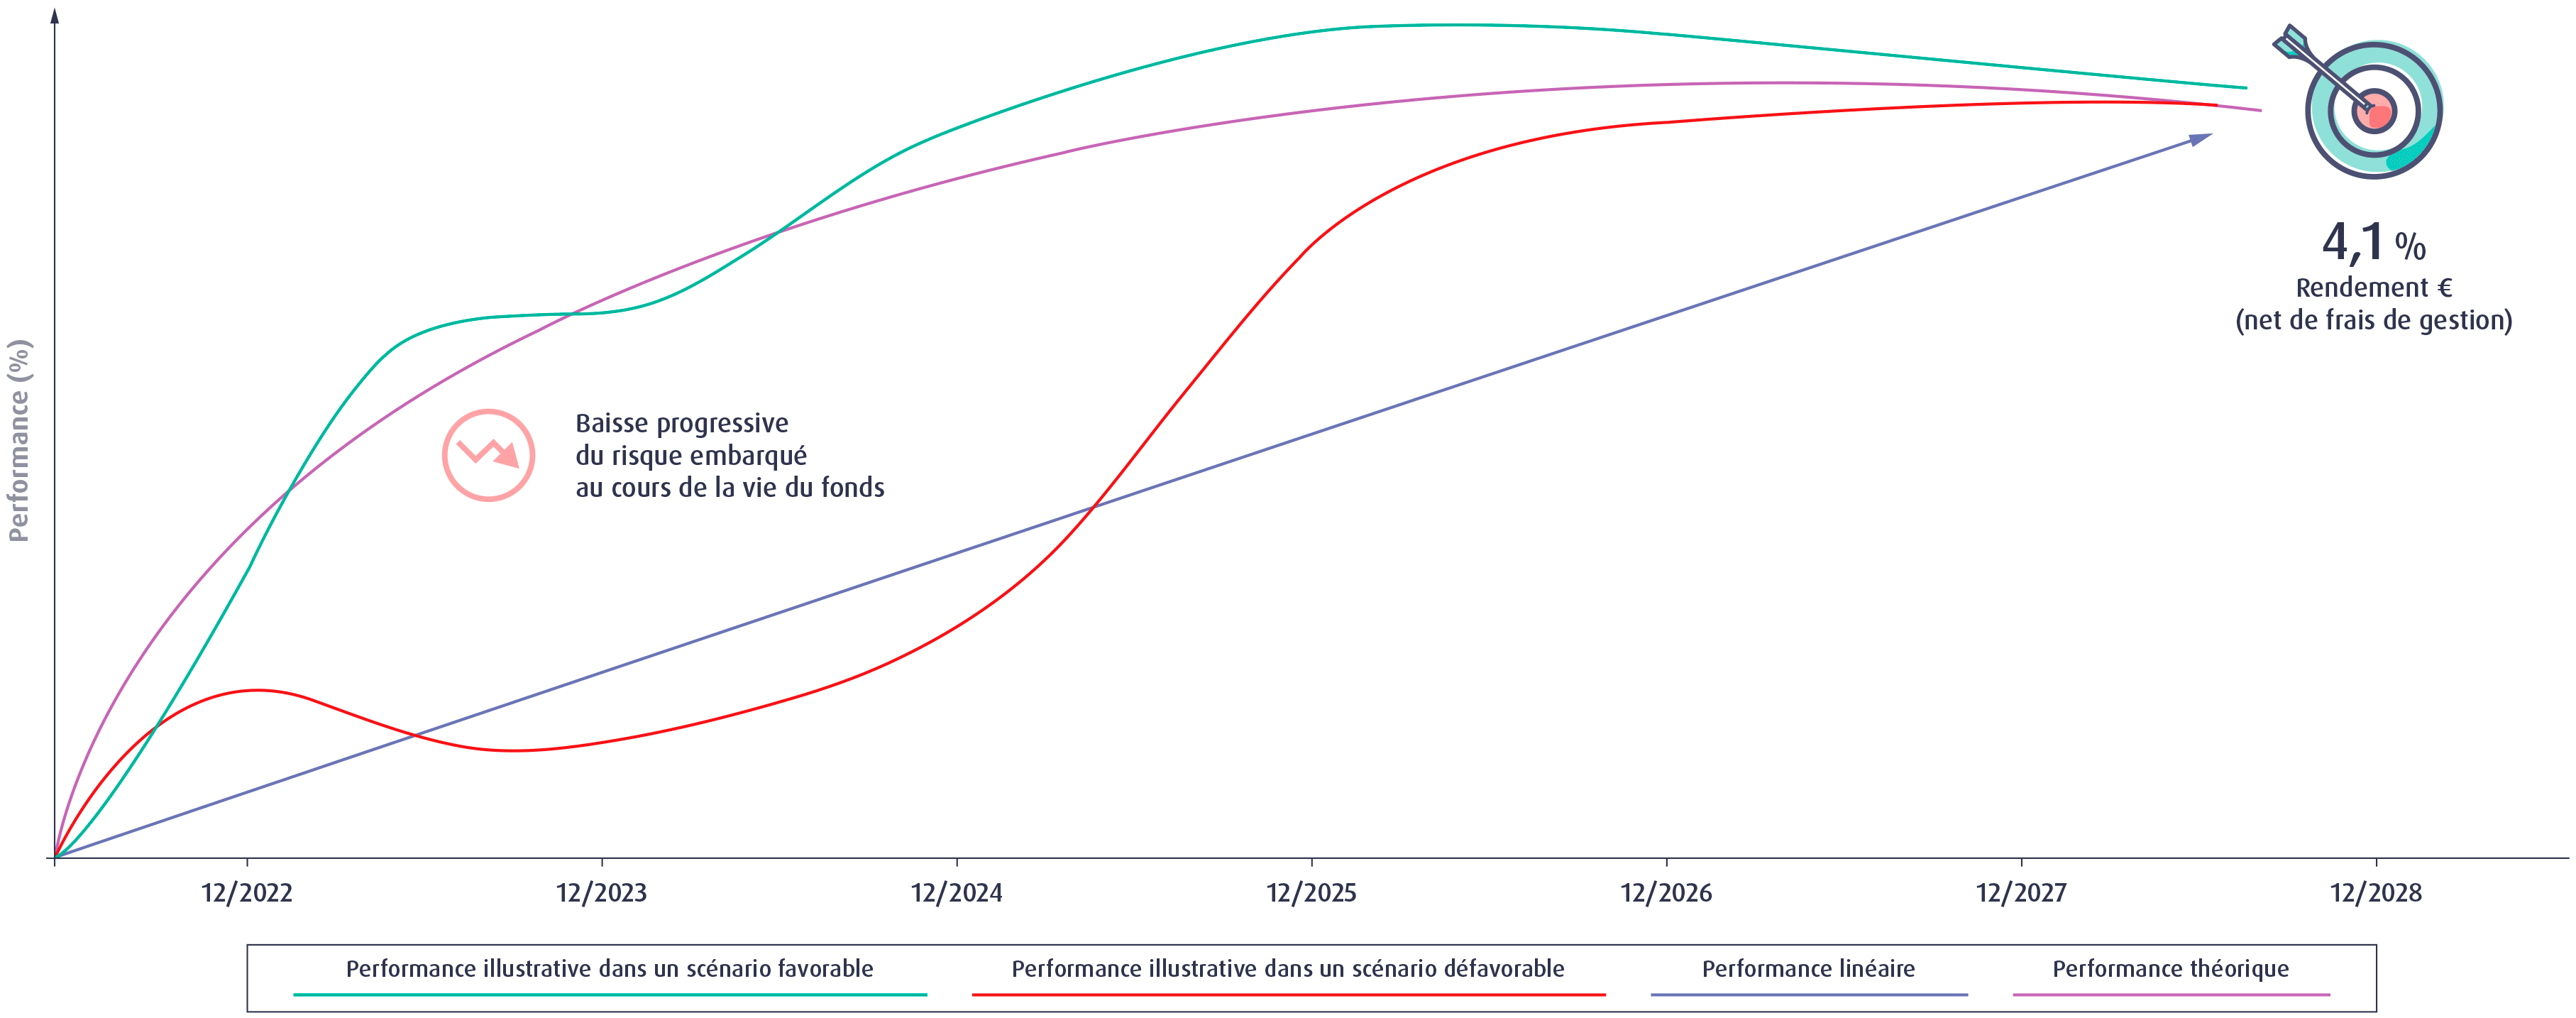 Graphique sur la performance cible de l'unité de compte Objectif 2028 Edmond de Rothschild.